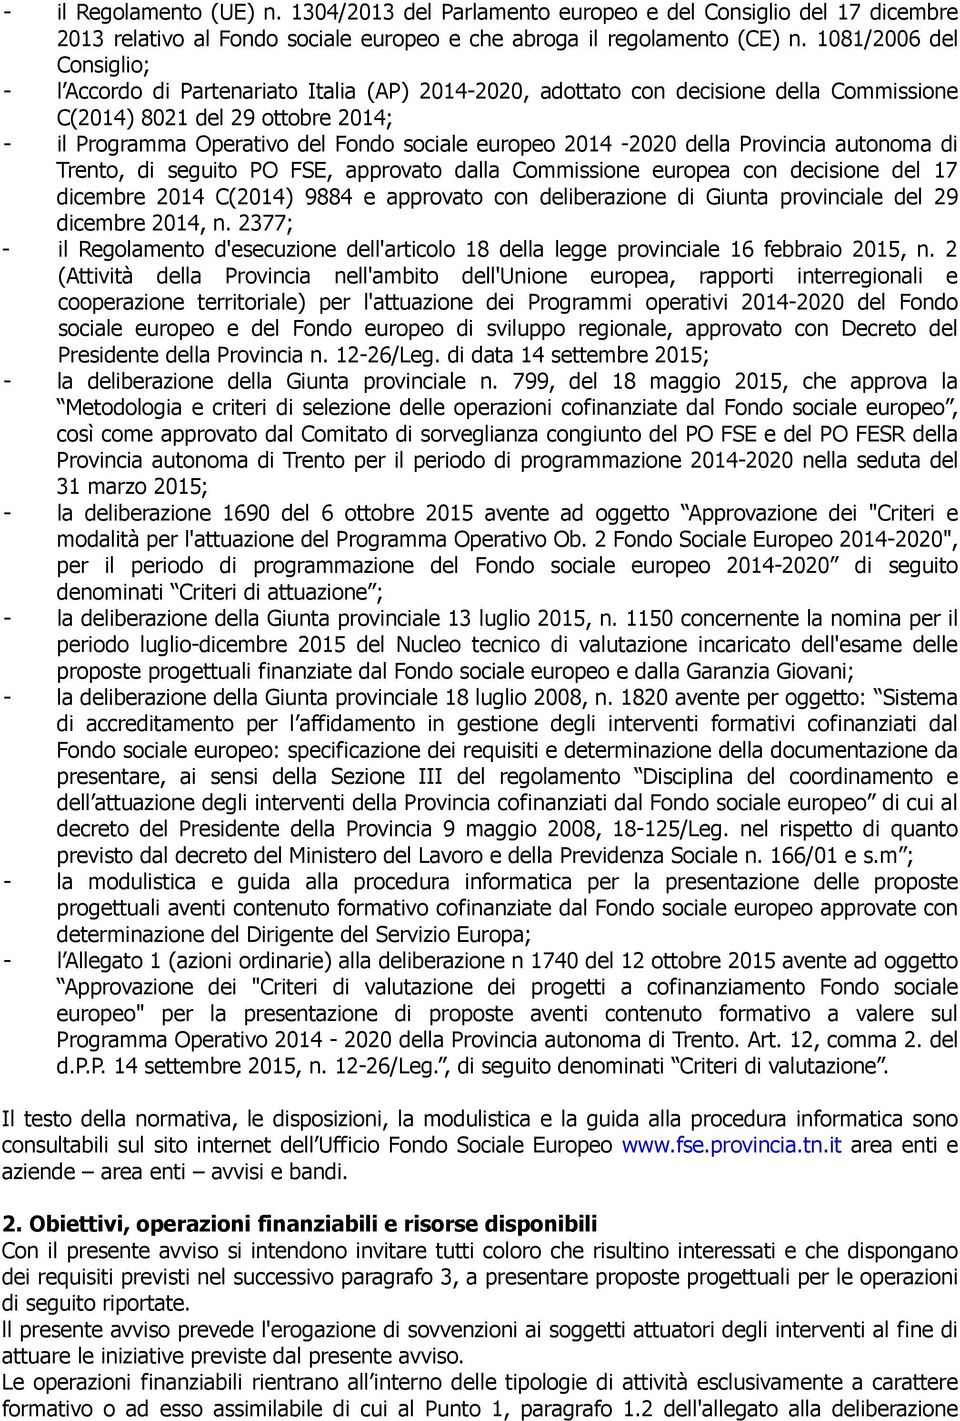 europeo 2014-2020 della Provincia autonoma di Trento, di seguito PO FSE, approvato dalla Commissione europea con decisione del 17 dicembre 2014 C(2014) 9884 e approvato con deliberazione di Giunta